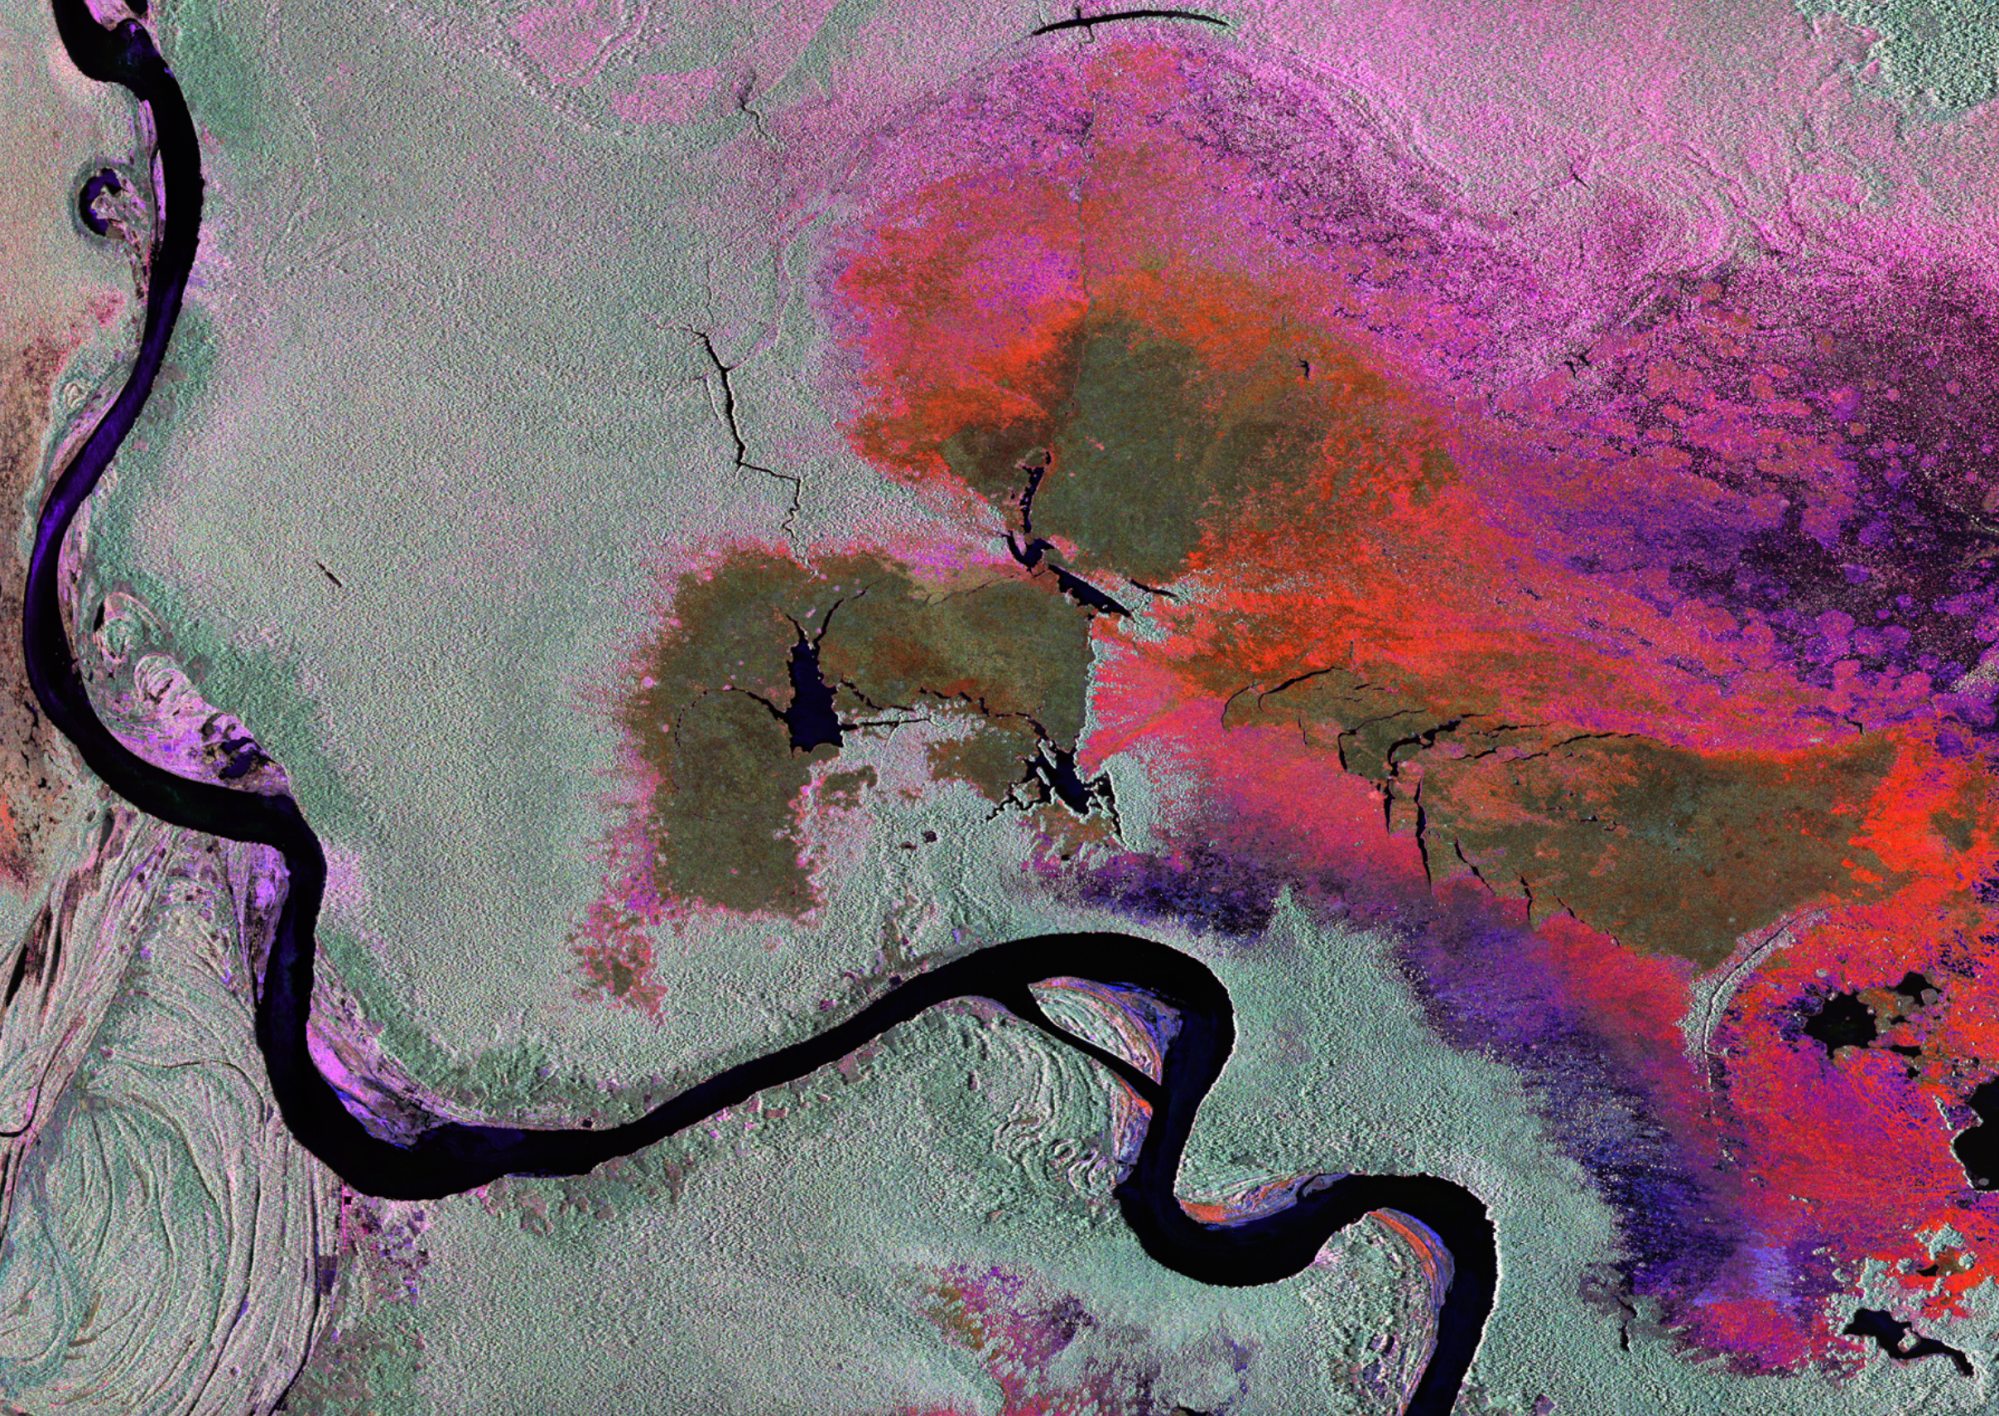 Imagen proveniente de un radar aéreo que sobrevoló Perú en 2013. El negro indica agua, el gris es selva tropical, el verde es vegetación baja y el rojo y el rosa son vegetación inundada.